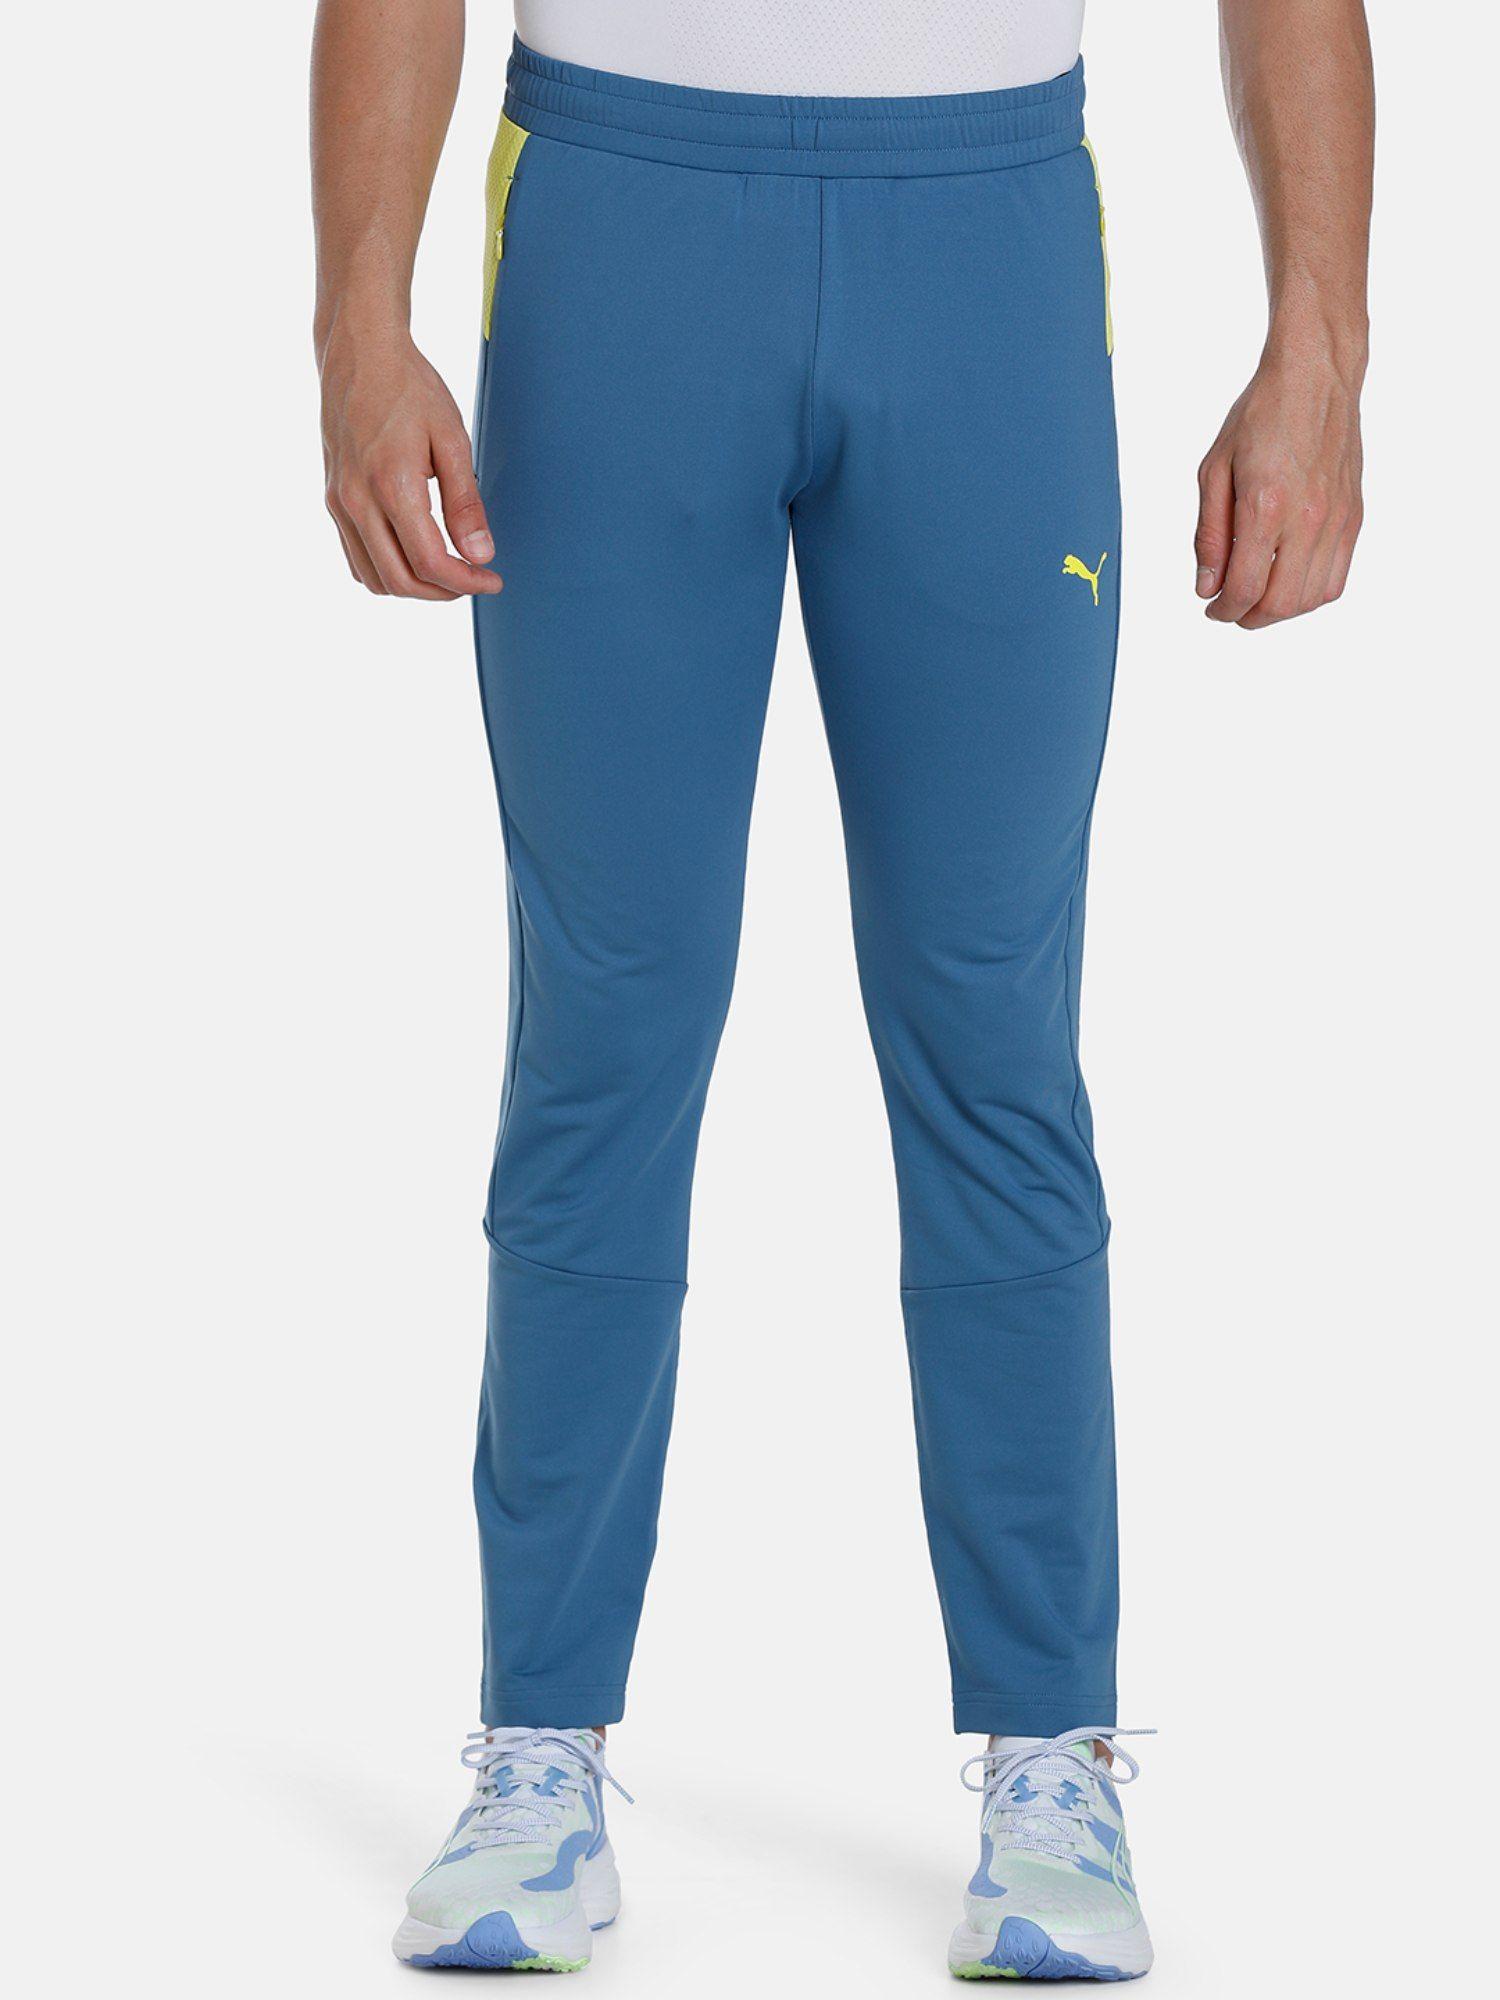 xone8-active-men-blue-sweatpants